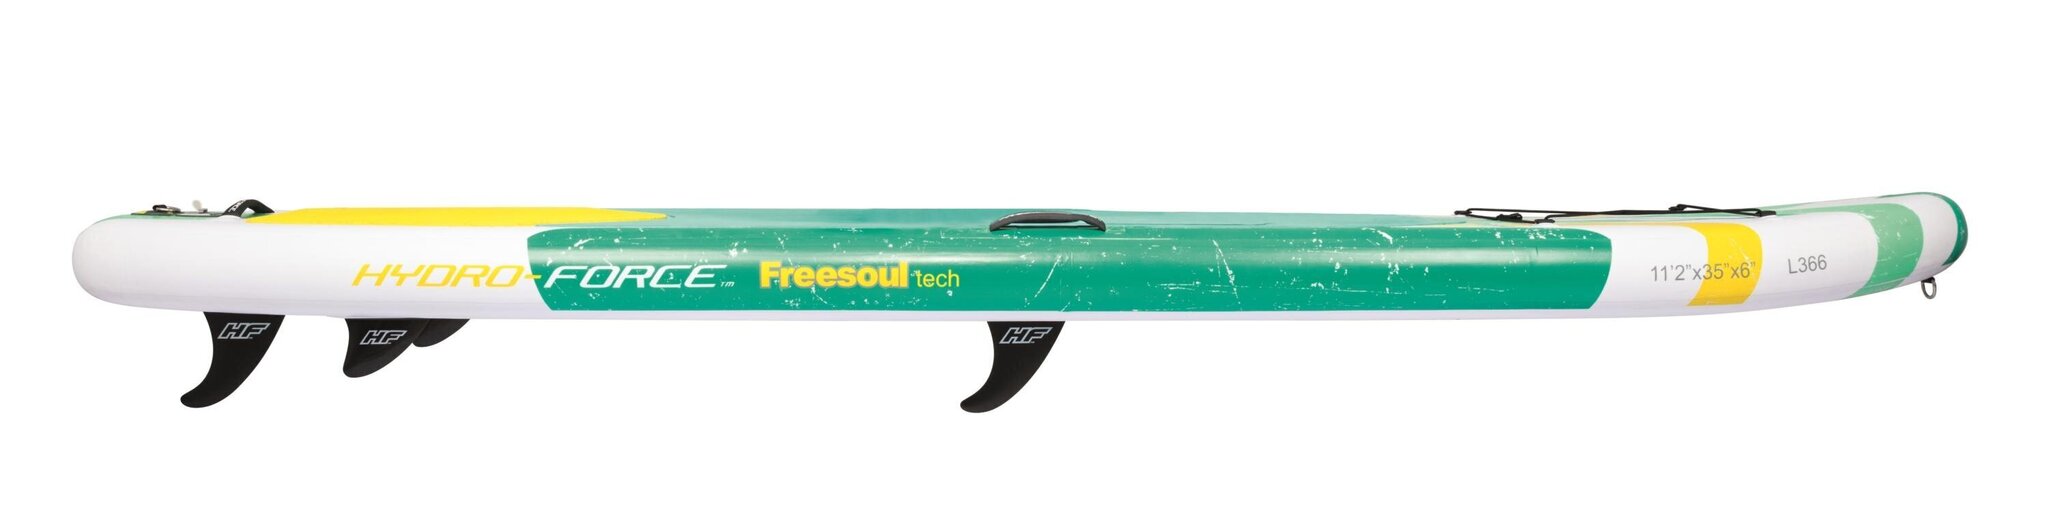 Piepūšamais SUP dēlis Bestway Hydro-Force Freesoul Tech, 340x89 cm cena un informācija | SUP dēļi, sērfa dēļi un piederumi | 220.lv